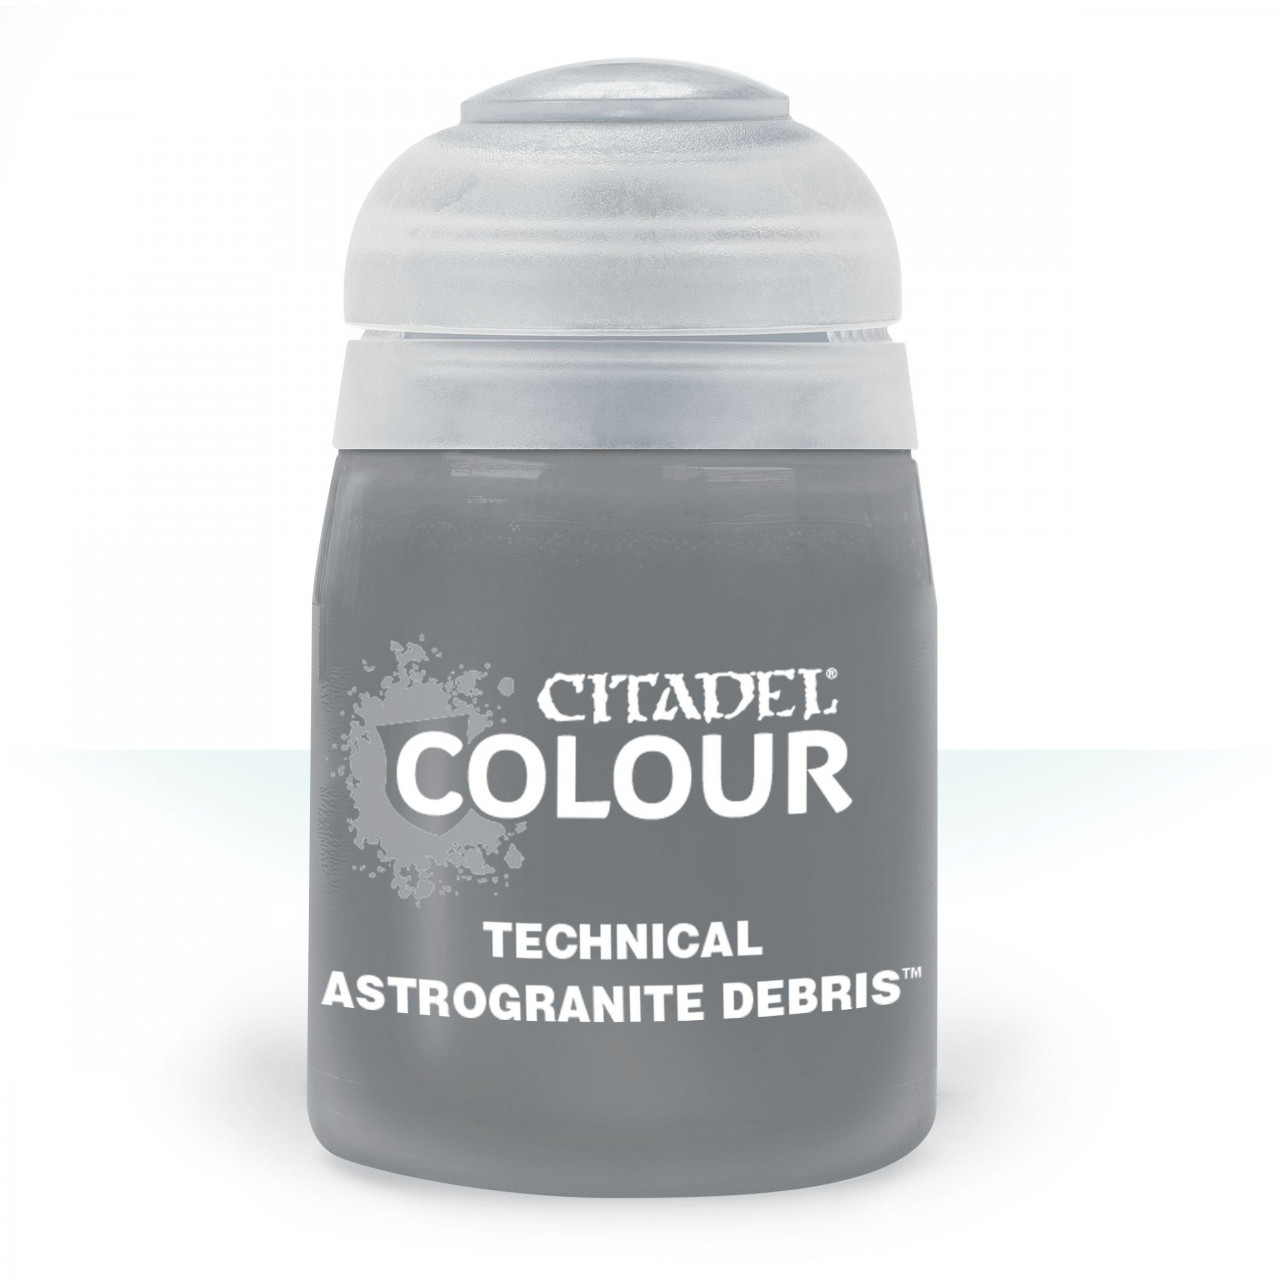 Citadel Technical: Astrogranite Debris 24ml